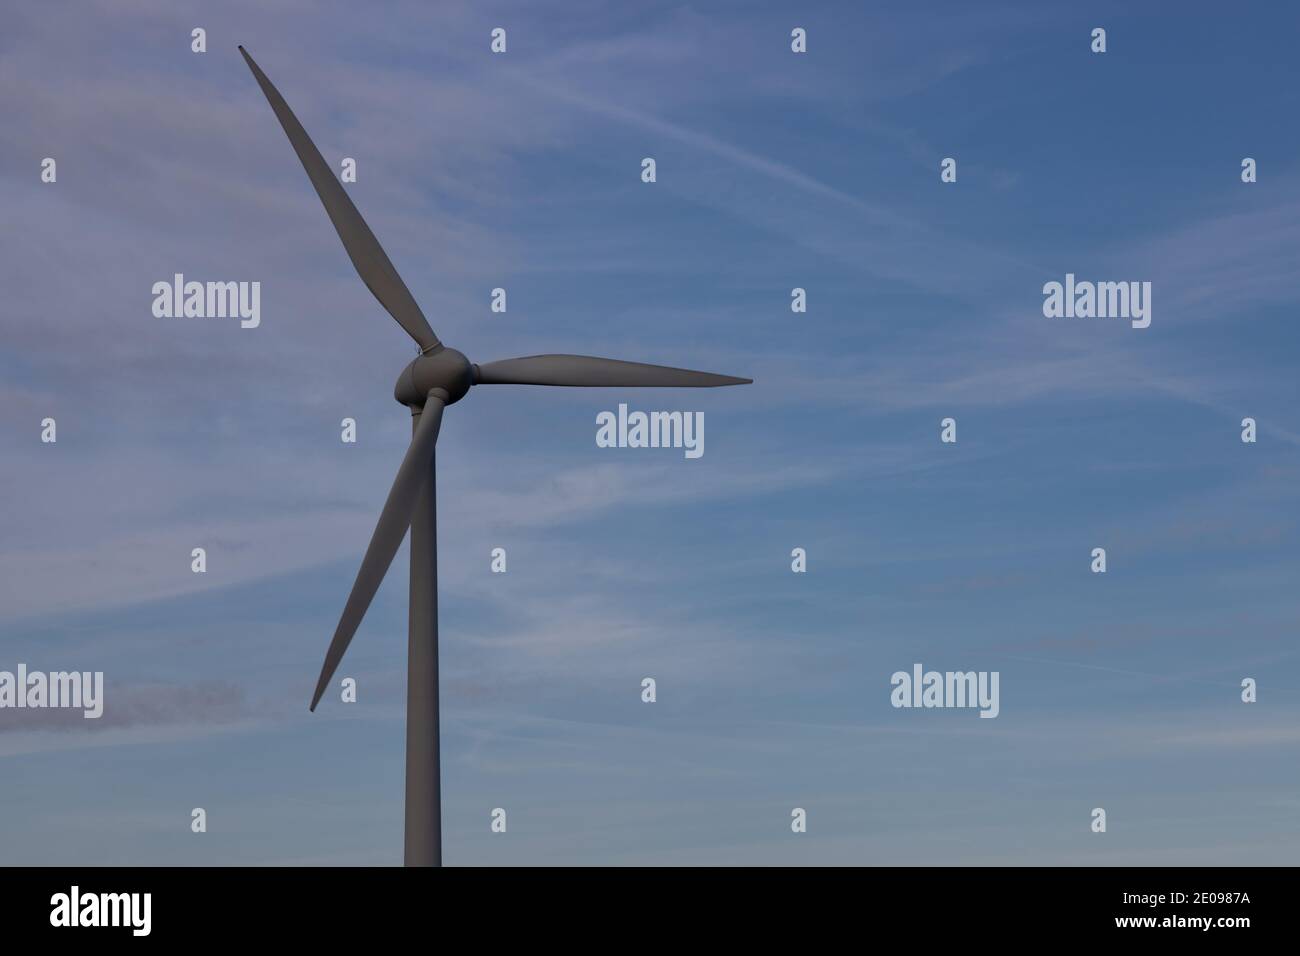 Detalle de un aerogenerador con un hermoso cielo en el fondo que simboliza la energía renovable y limpia Foto de stock